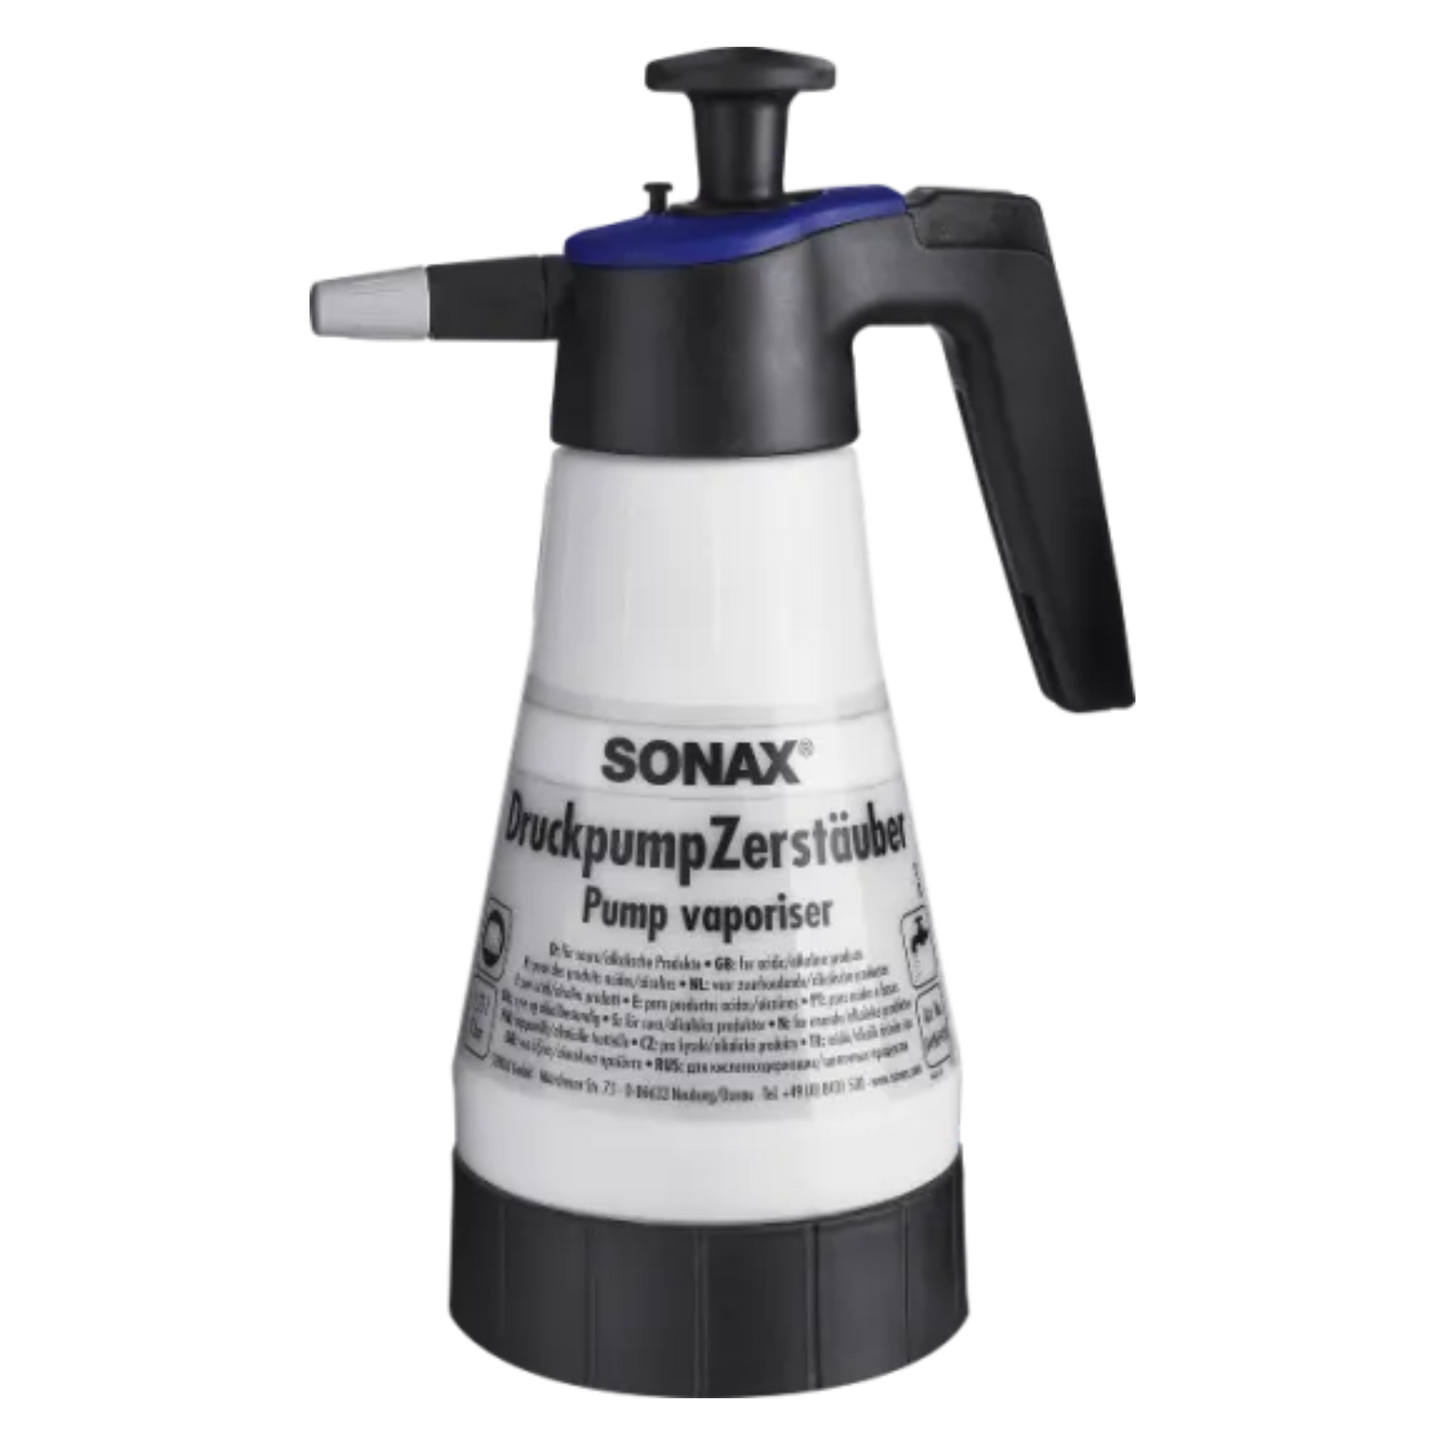 SONAX Druckpumpzerstäuber für saure/alkalische Produkte, 1,25l